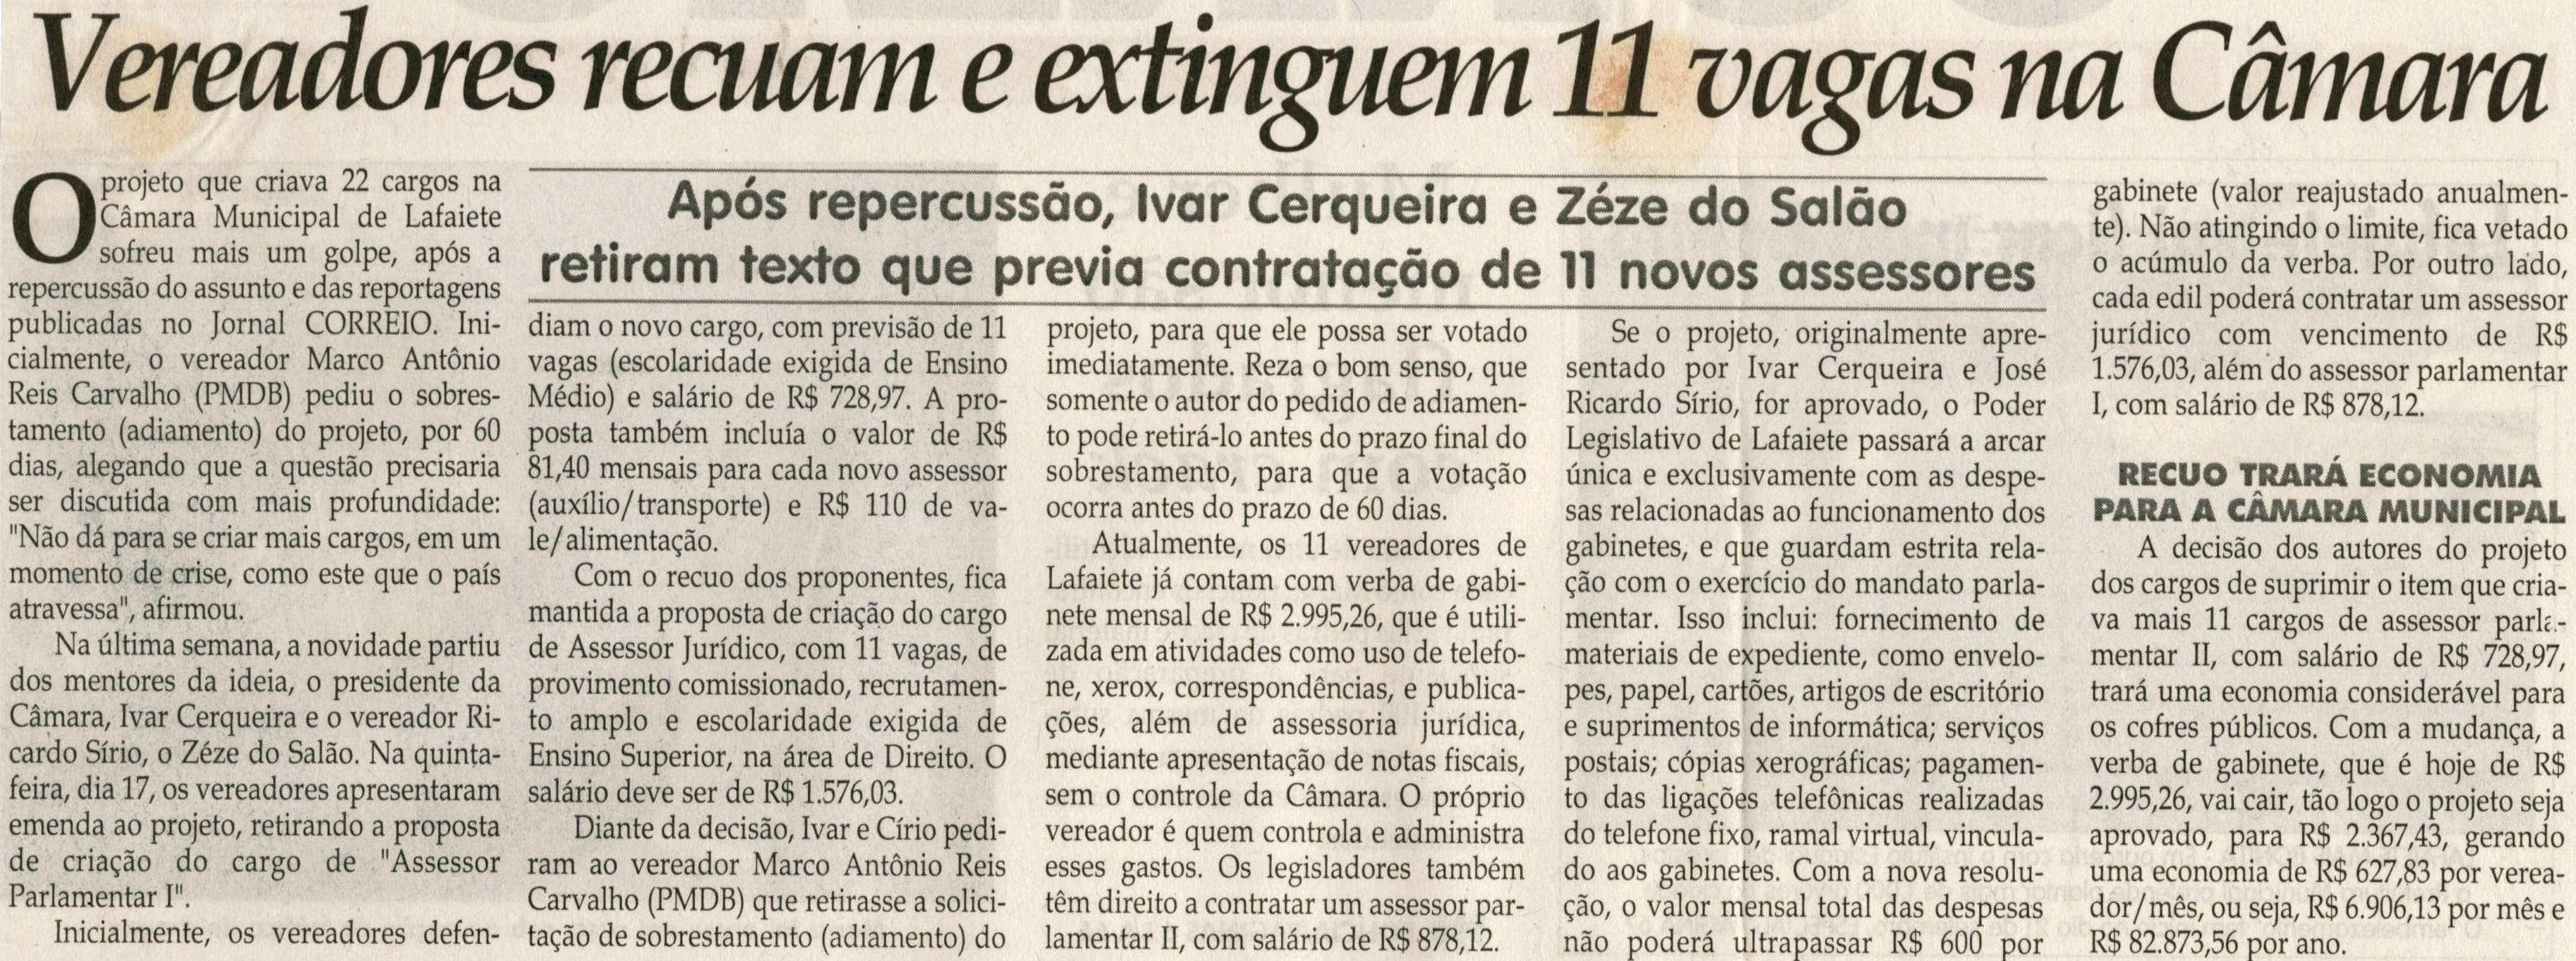 Vereadores recuam e extinguem 11 vagas na Câmara. Jornal Correio da Cidade, Conselheiro Lafaiete, 19 set. 2009, p. 02.